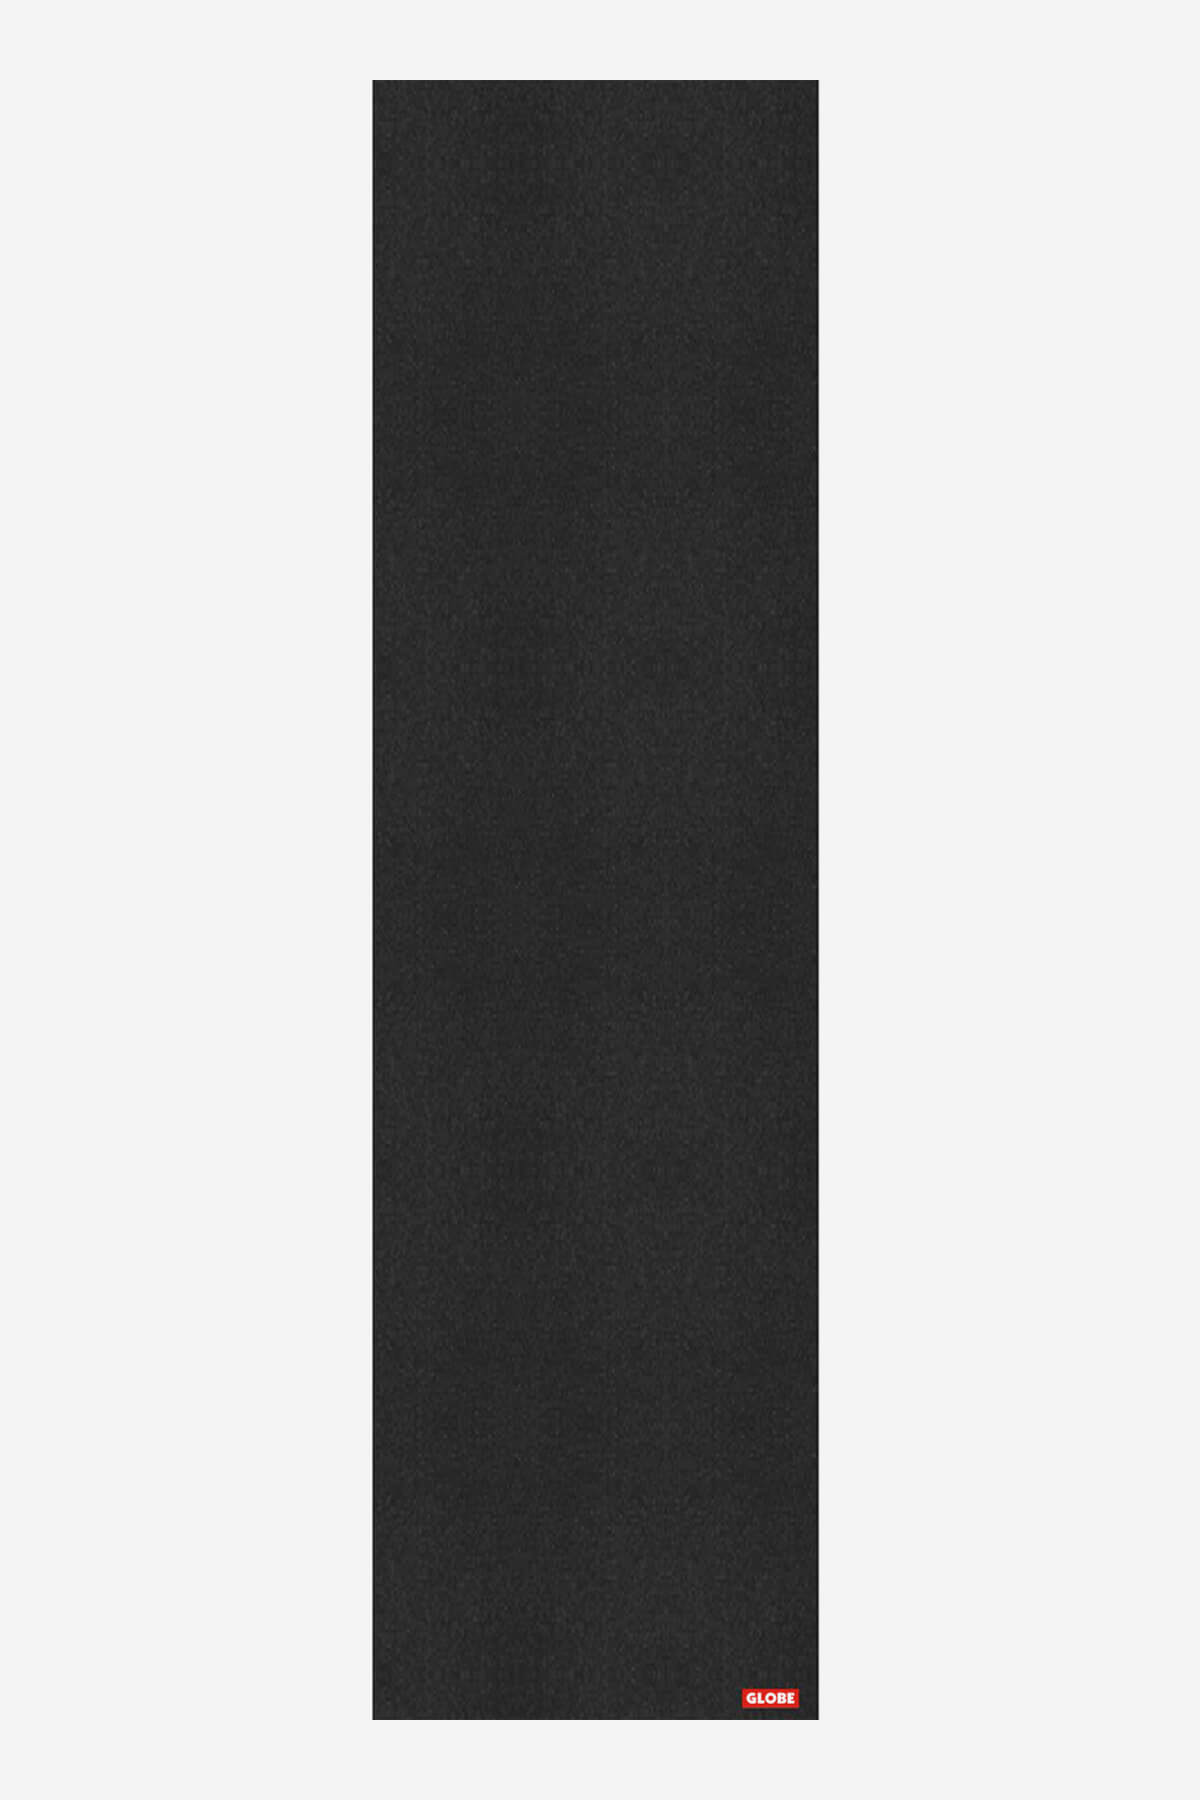 Globe Griptape Black Grip tape Single in Black